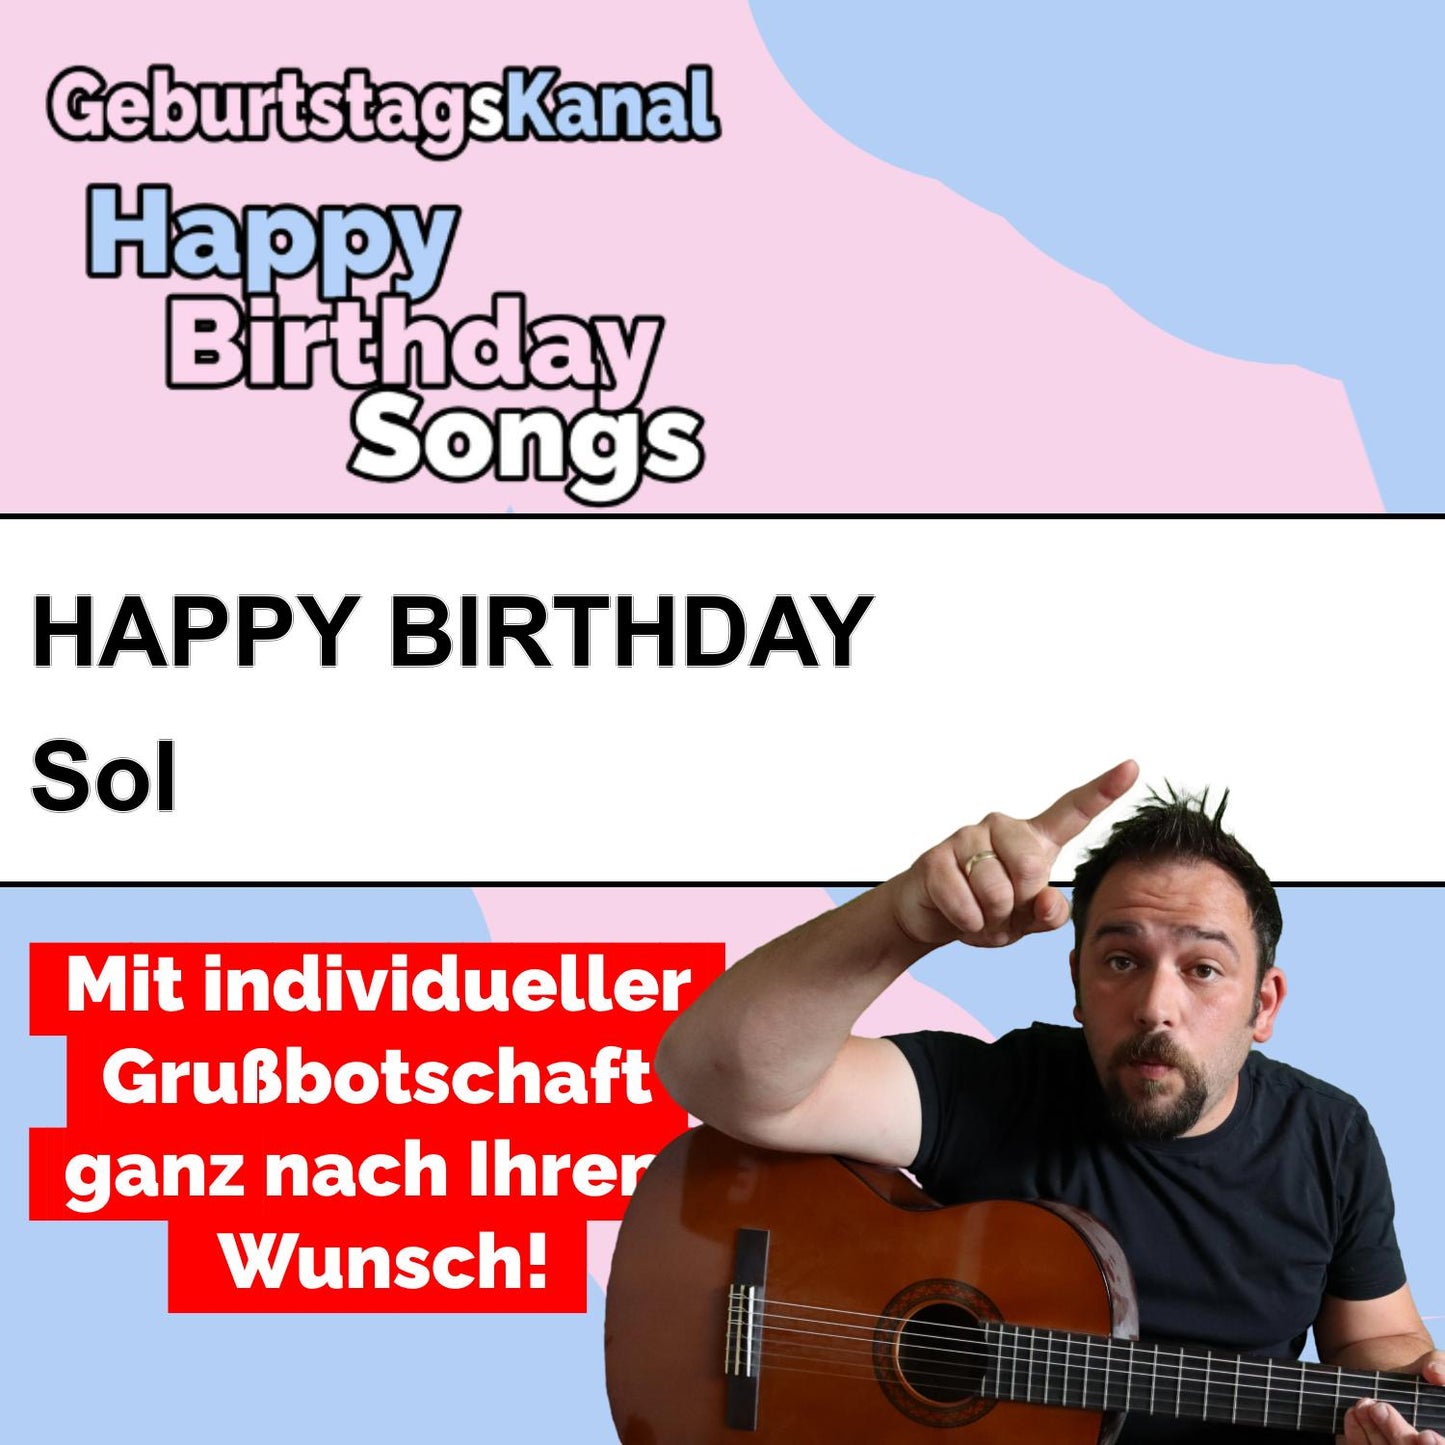 Produktbild Happy Birthday to you Sol mit Wunschgrußbotschaft